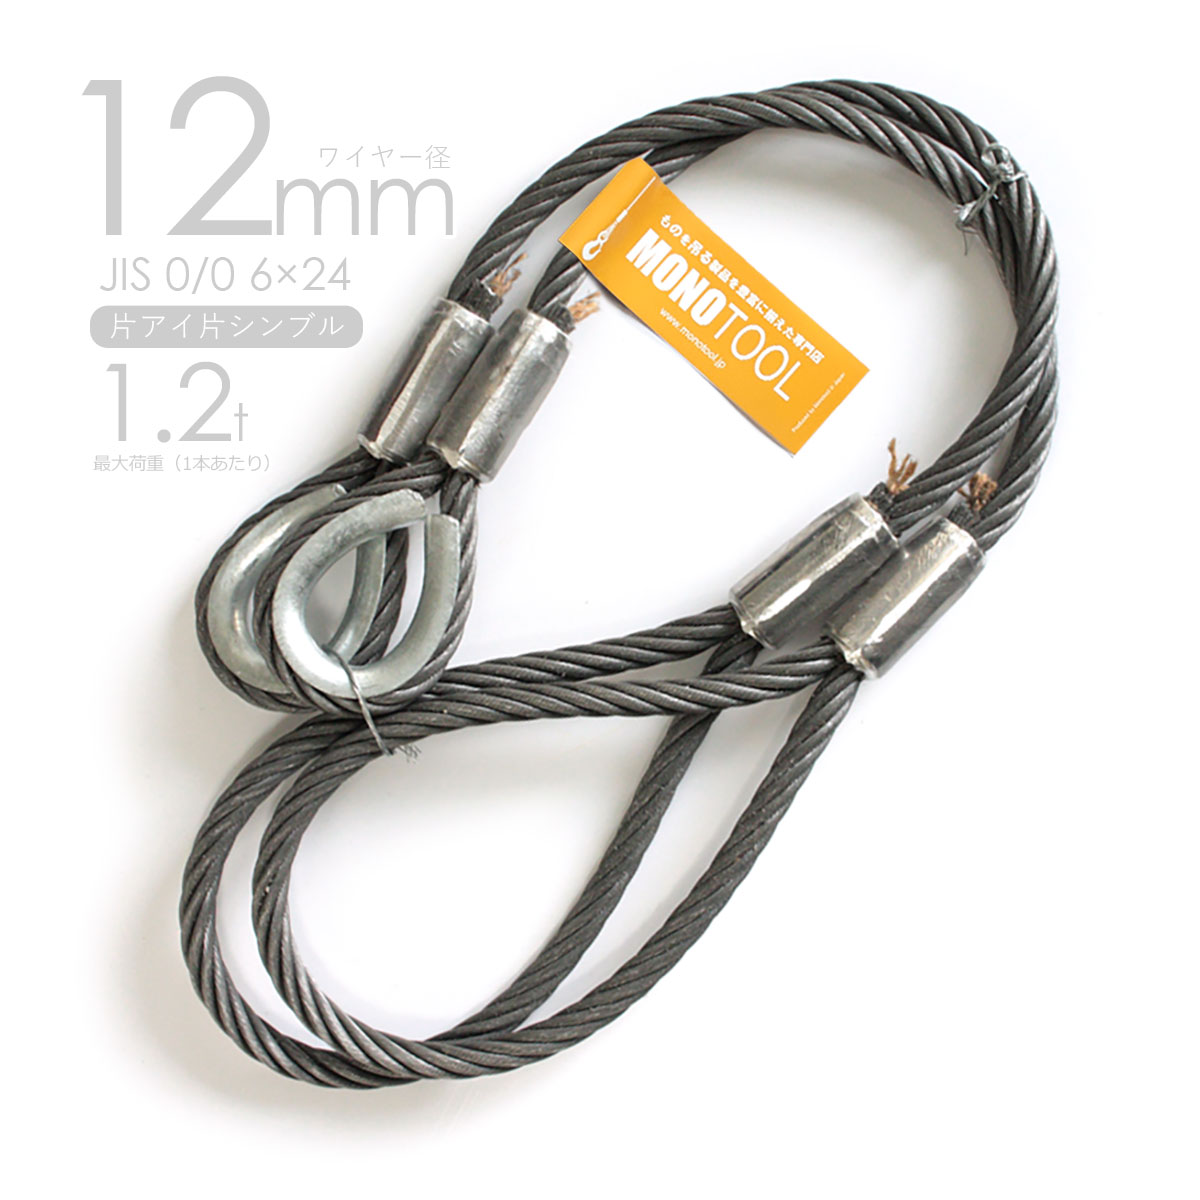 鳳商事株式会社 4点吊り Φ12mm(4分) フック付ワイヤーロープ 使用荷重3ton用  (1.5m)  JIS規格品仕様 玉掛け メッシュパレット  スリング 吊り具 シャックル - 1